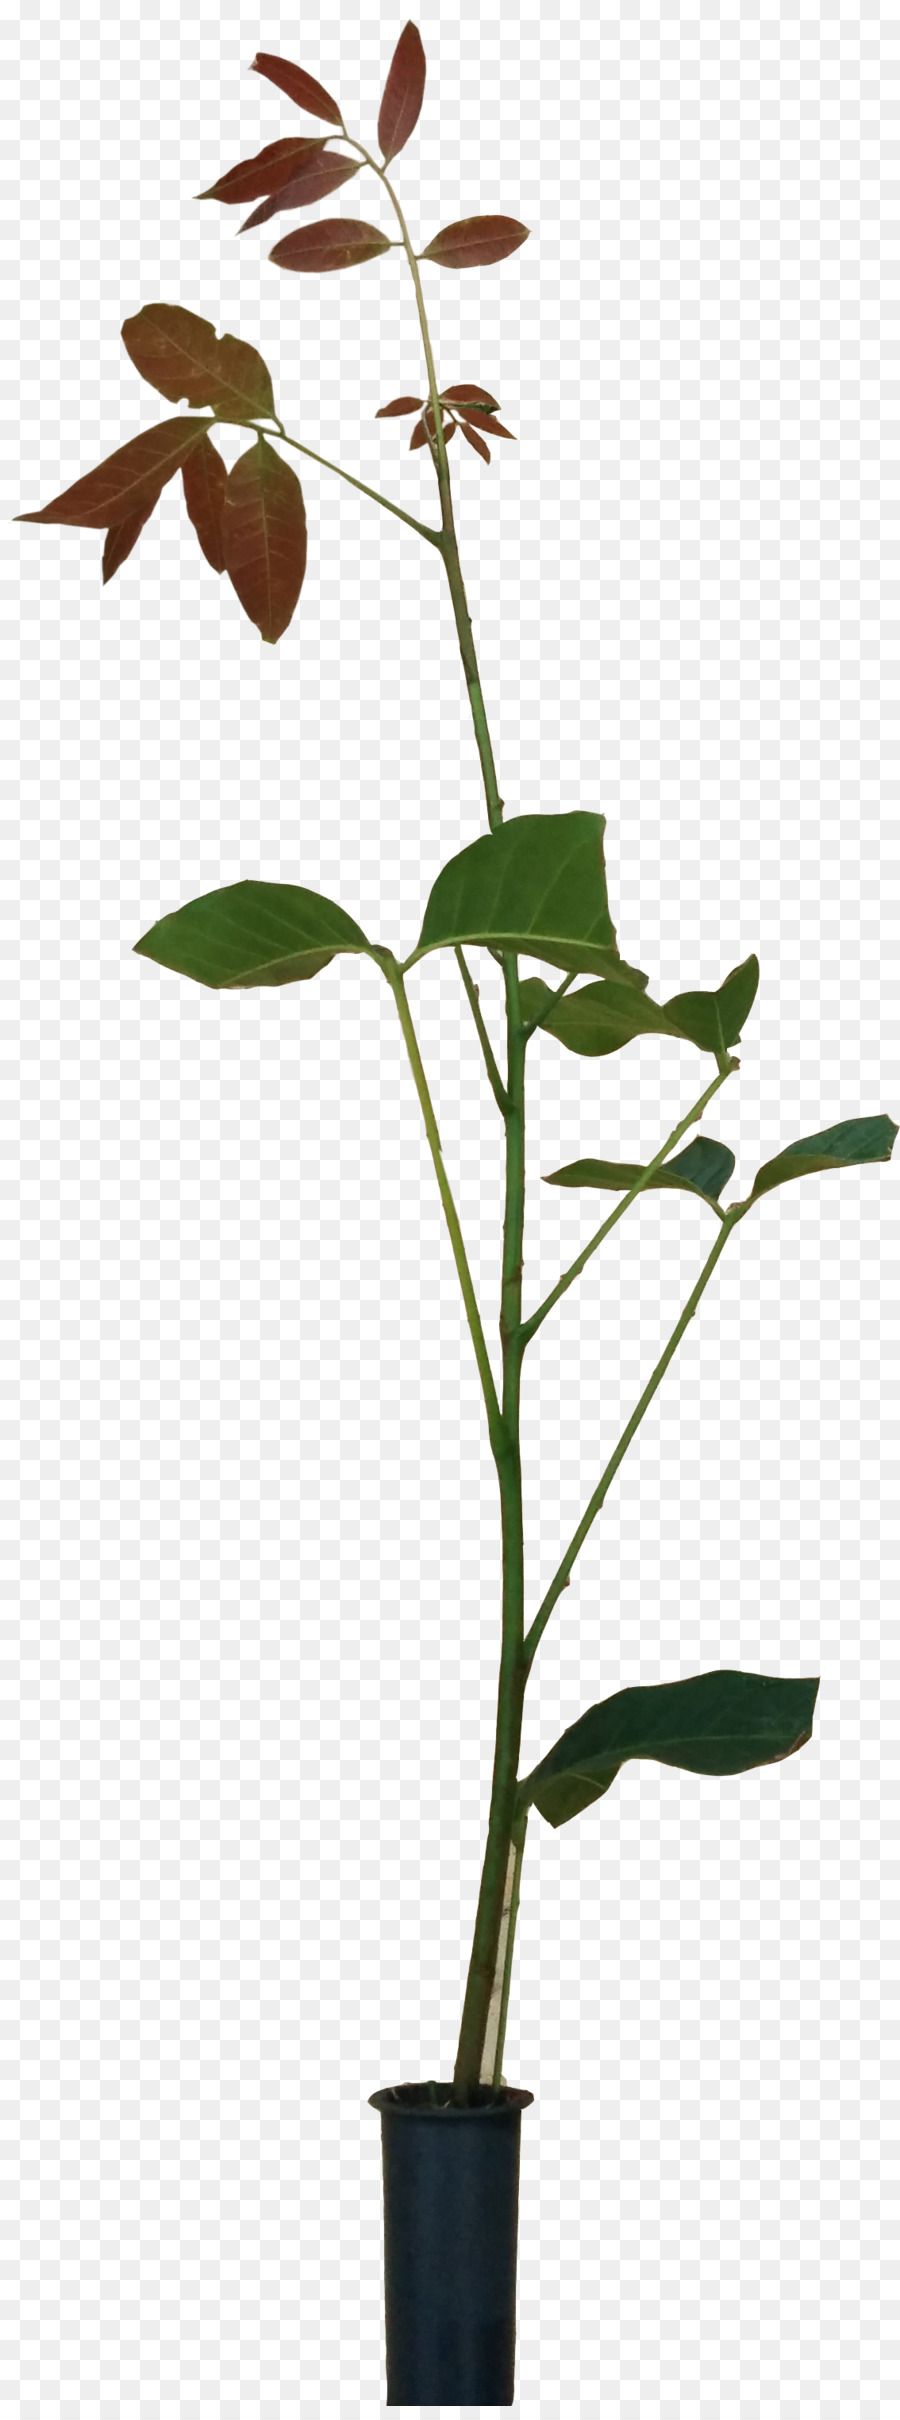 Zweig, Blumentopf, Pflanze, Stamm Blatt - Blume